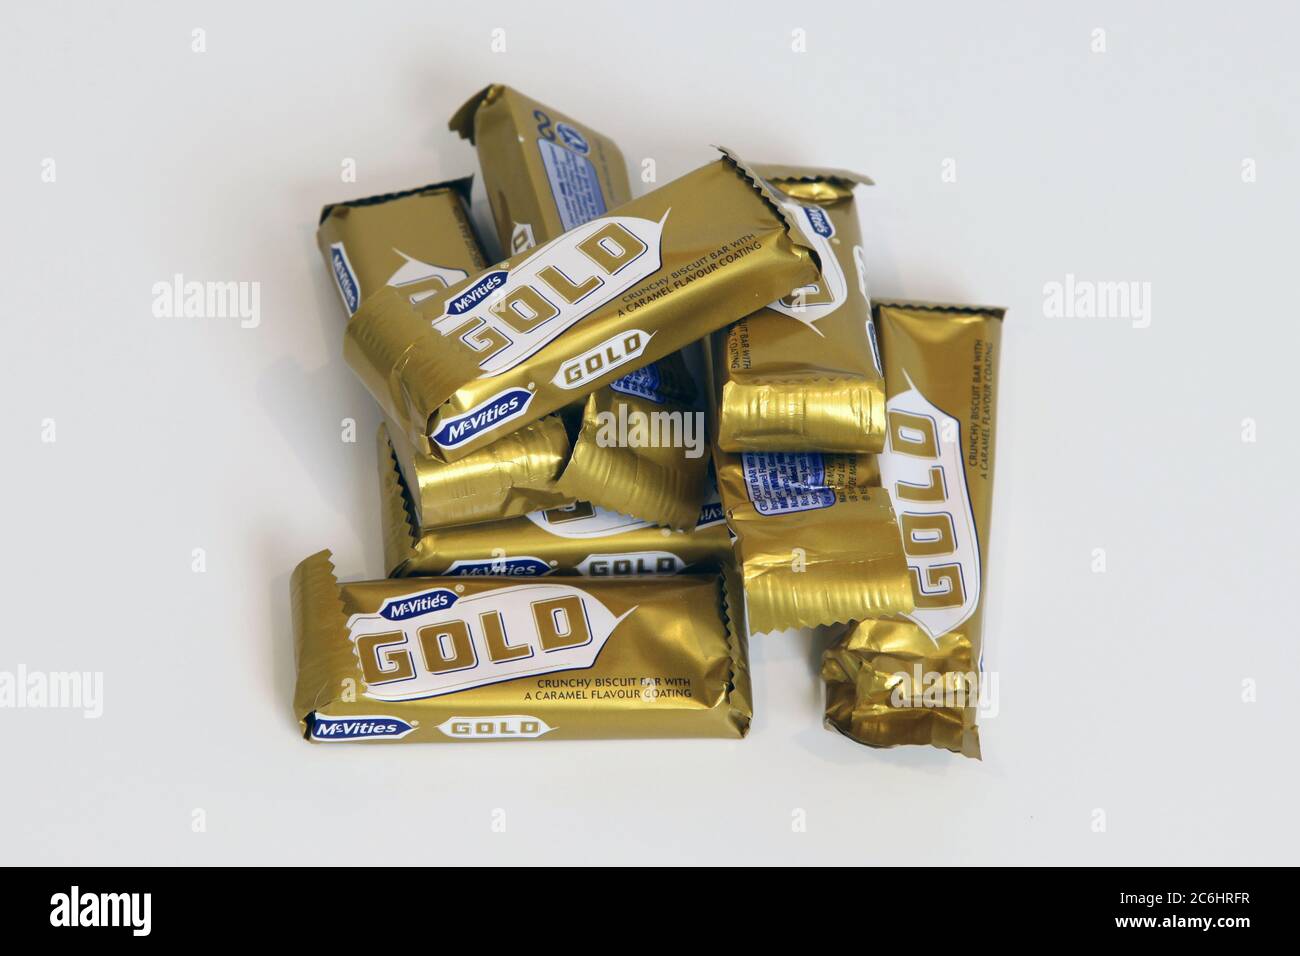 Ein Stapel von McVities Gold-Bars, Schokoriegel, in Verpackung. 2020 reduzierte Größe. Stockfoto